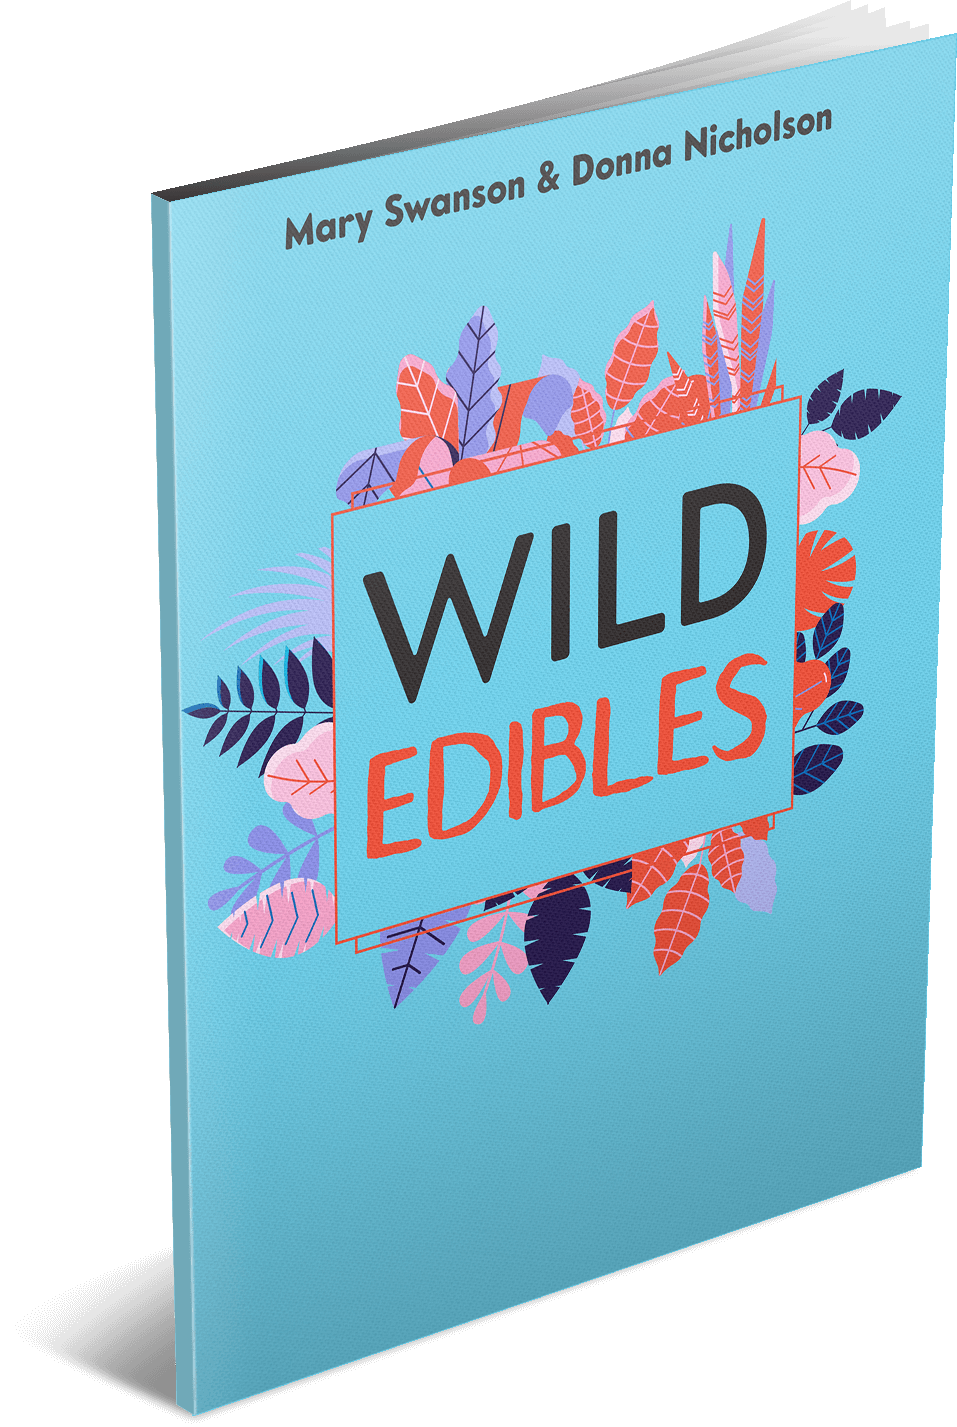 Wild Edibles